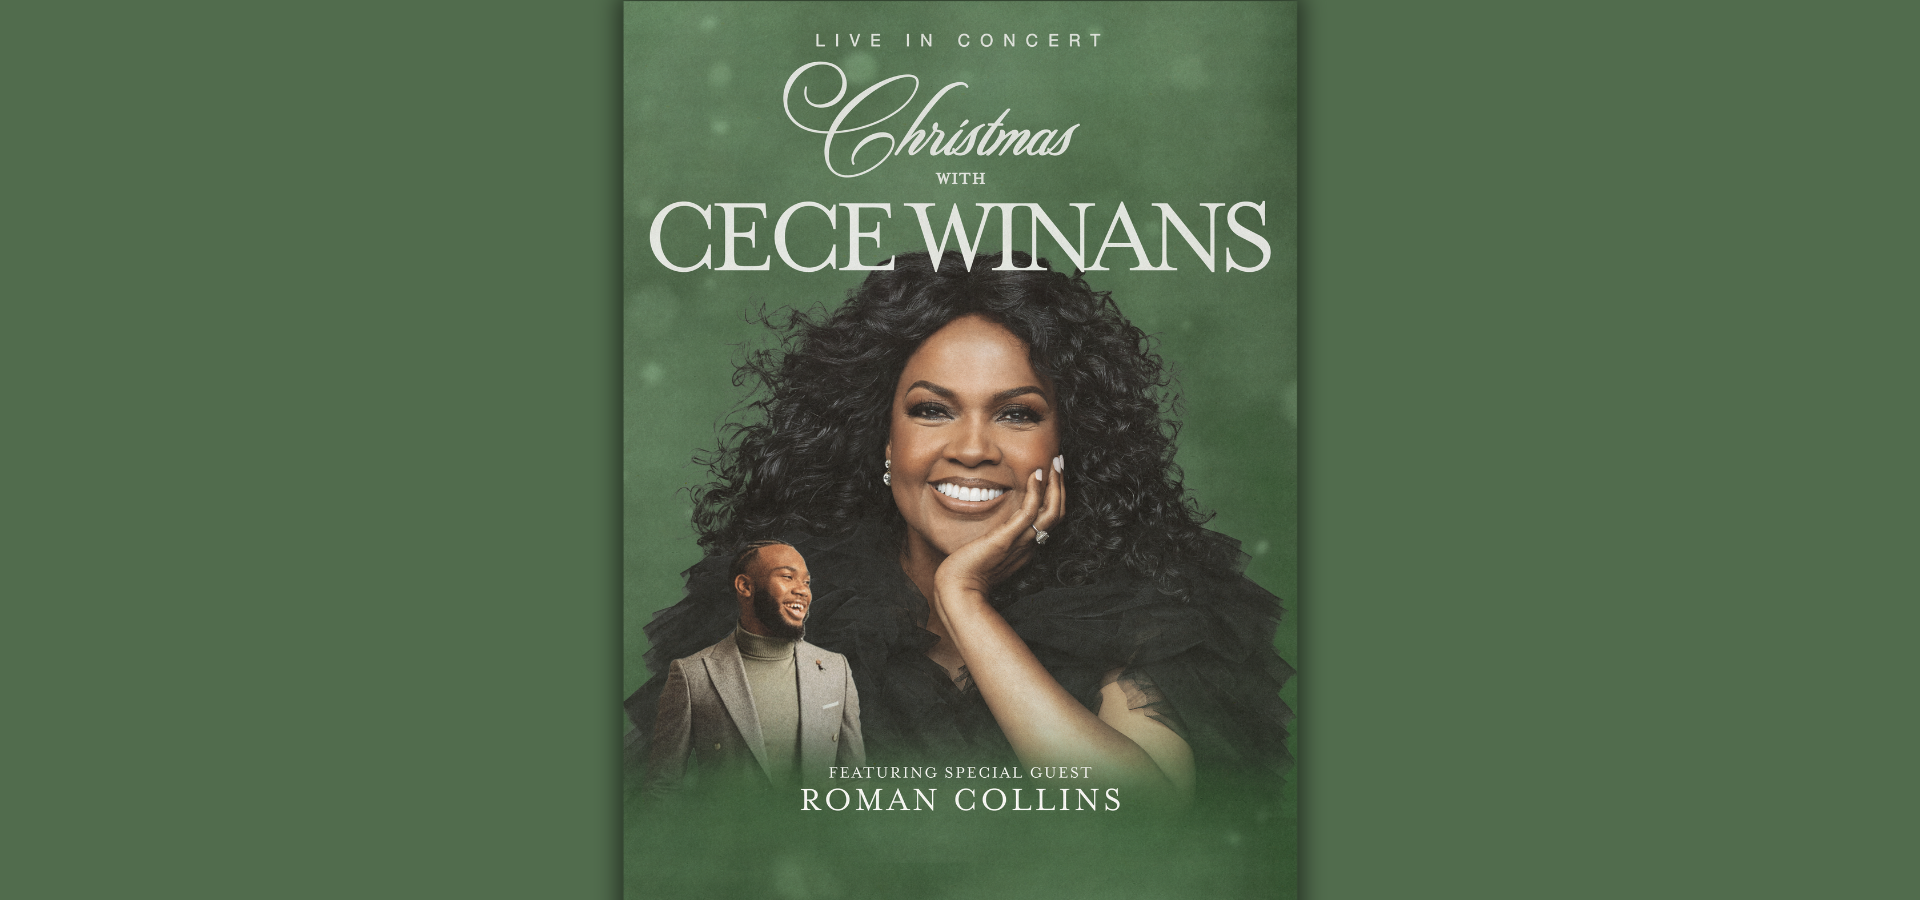 CeCe Winans Announces Christmas Tour